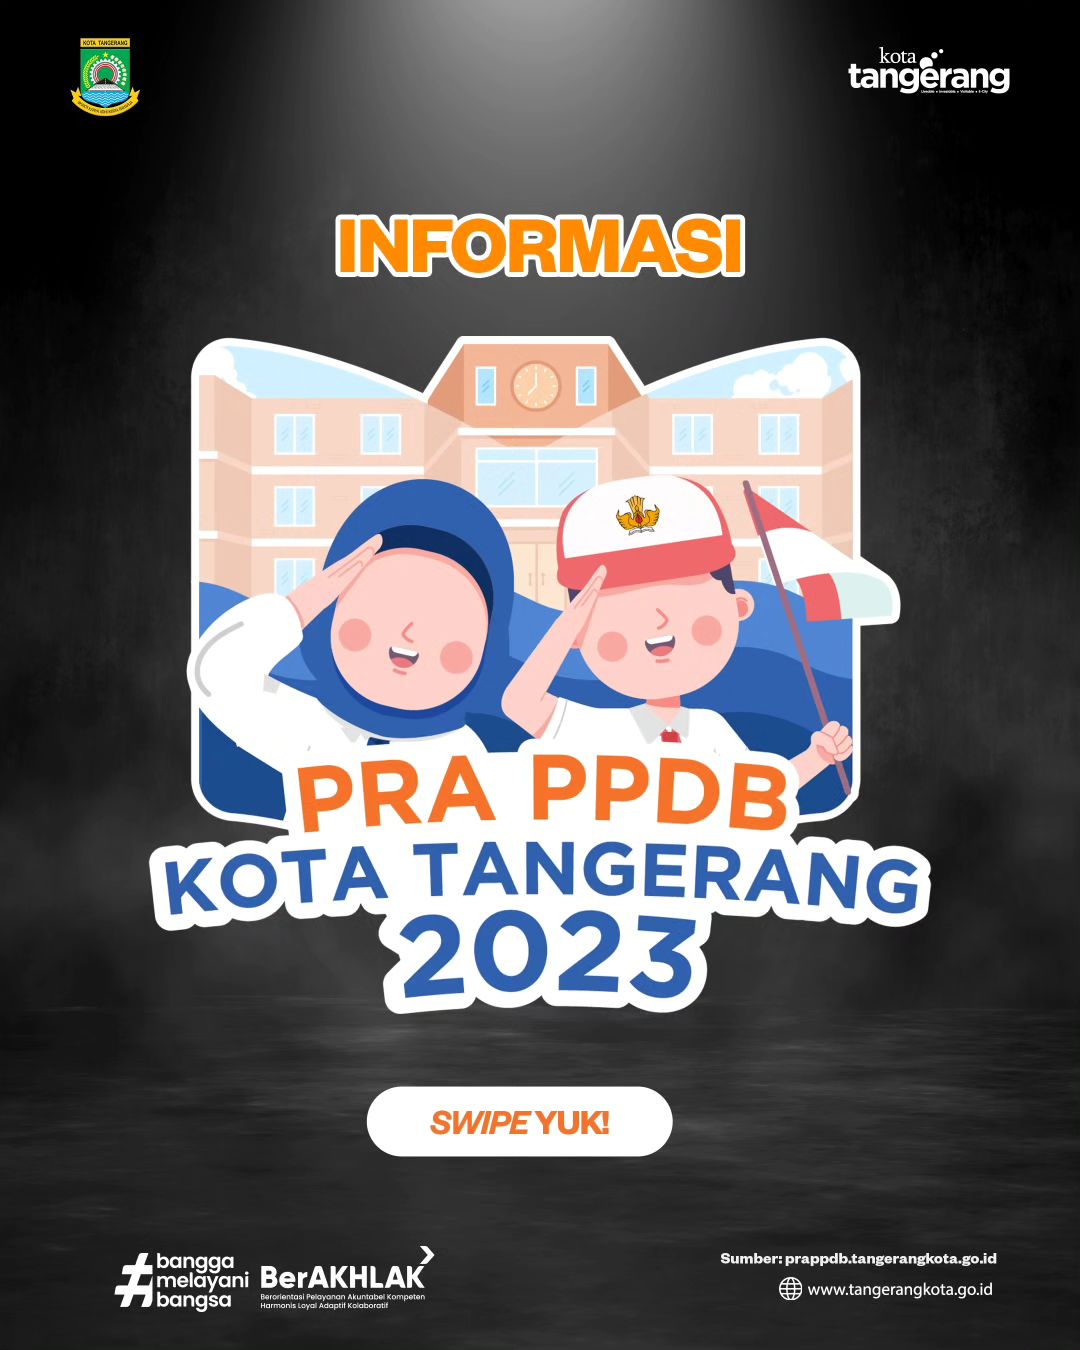 IMG-informasi-pra-ppdb-kota-tangerang-2023